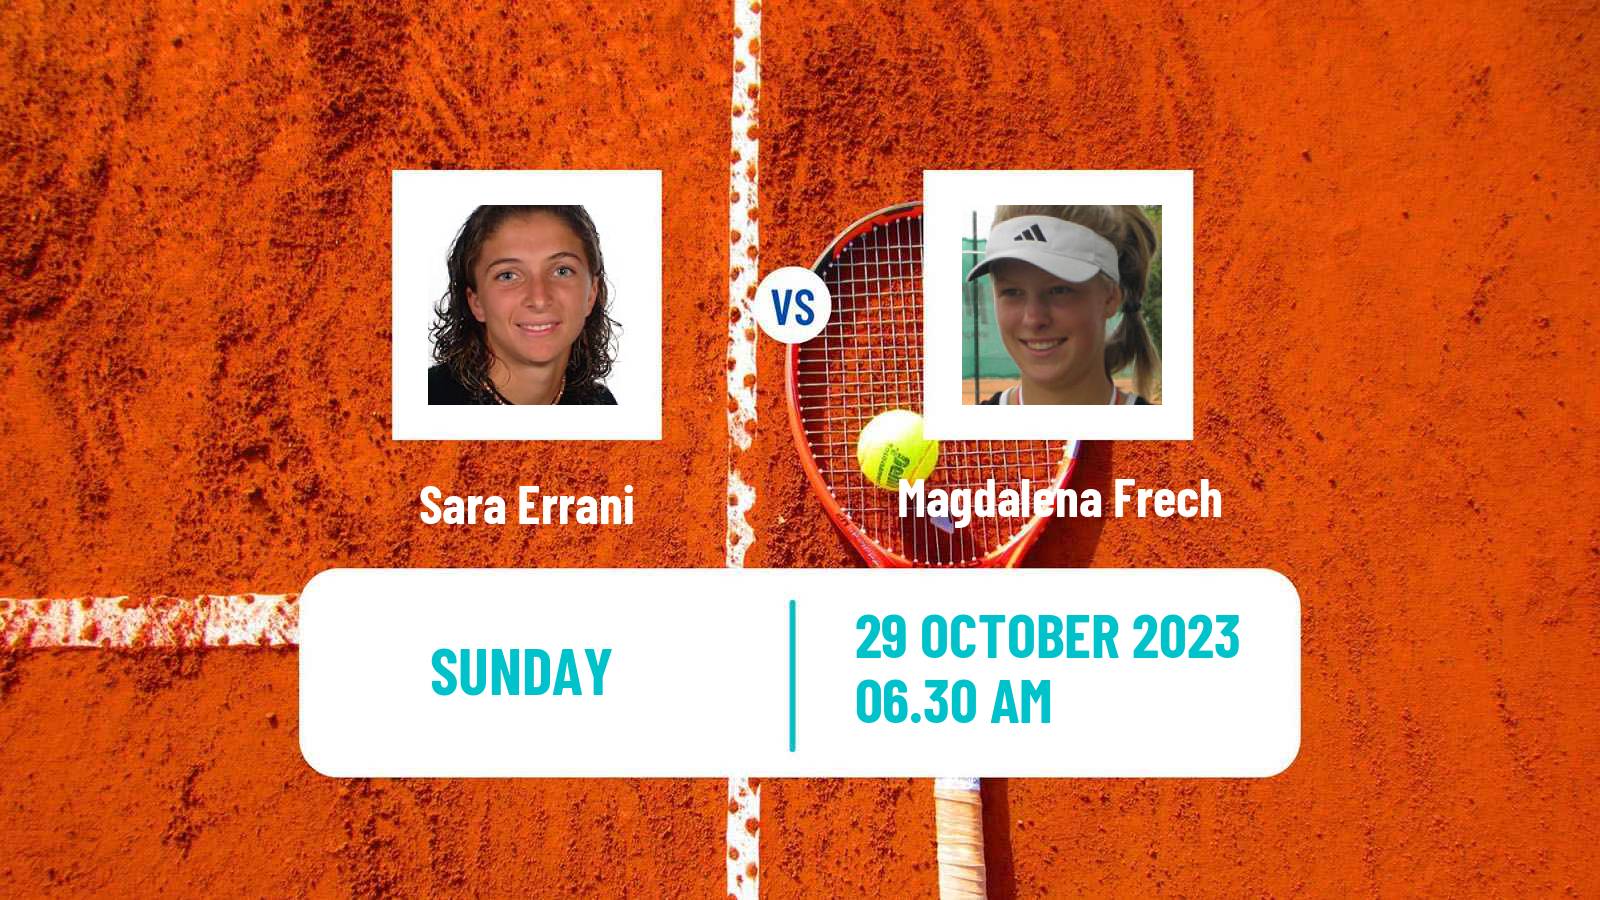 Tennis ITF W100 Les Franqueses Del Valles Women Sara Errani - Magdalena Frech